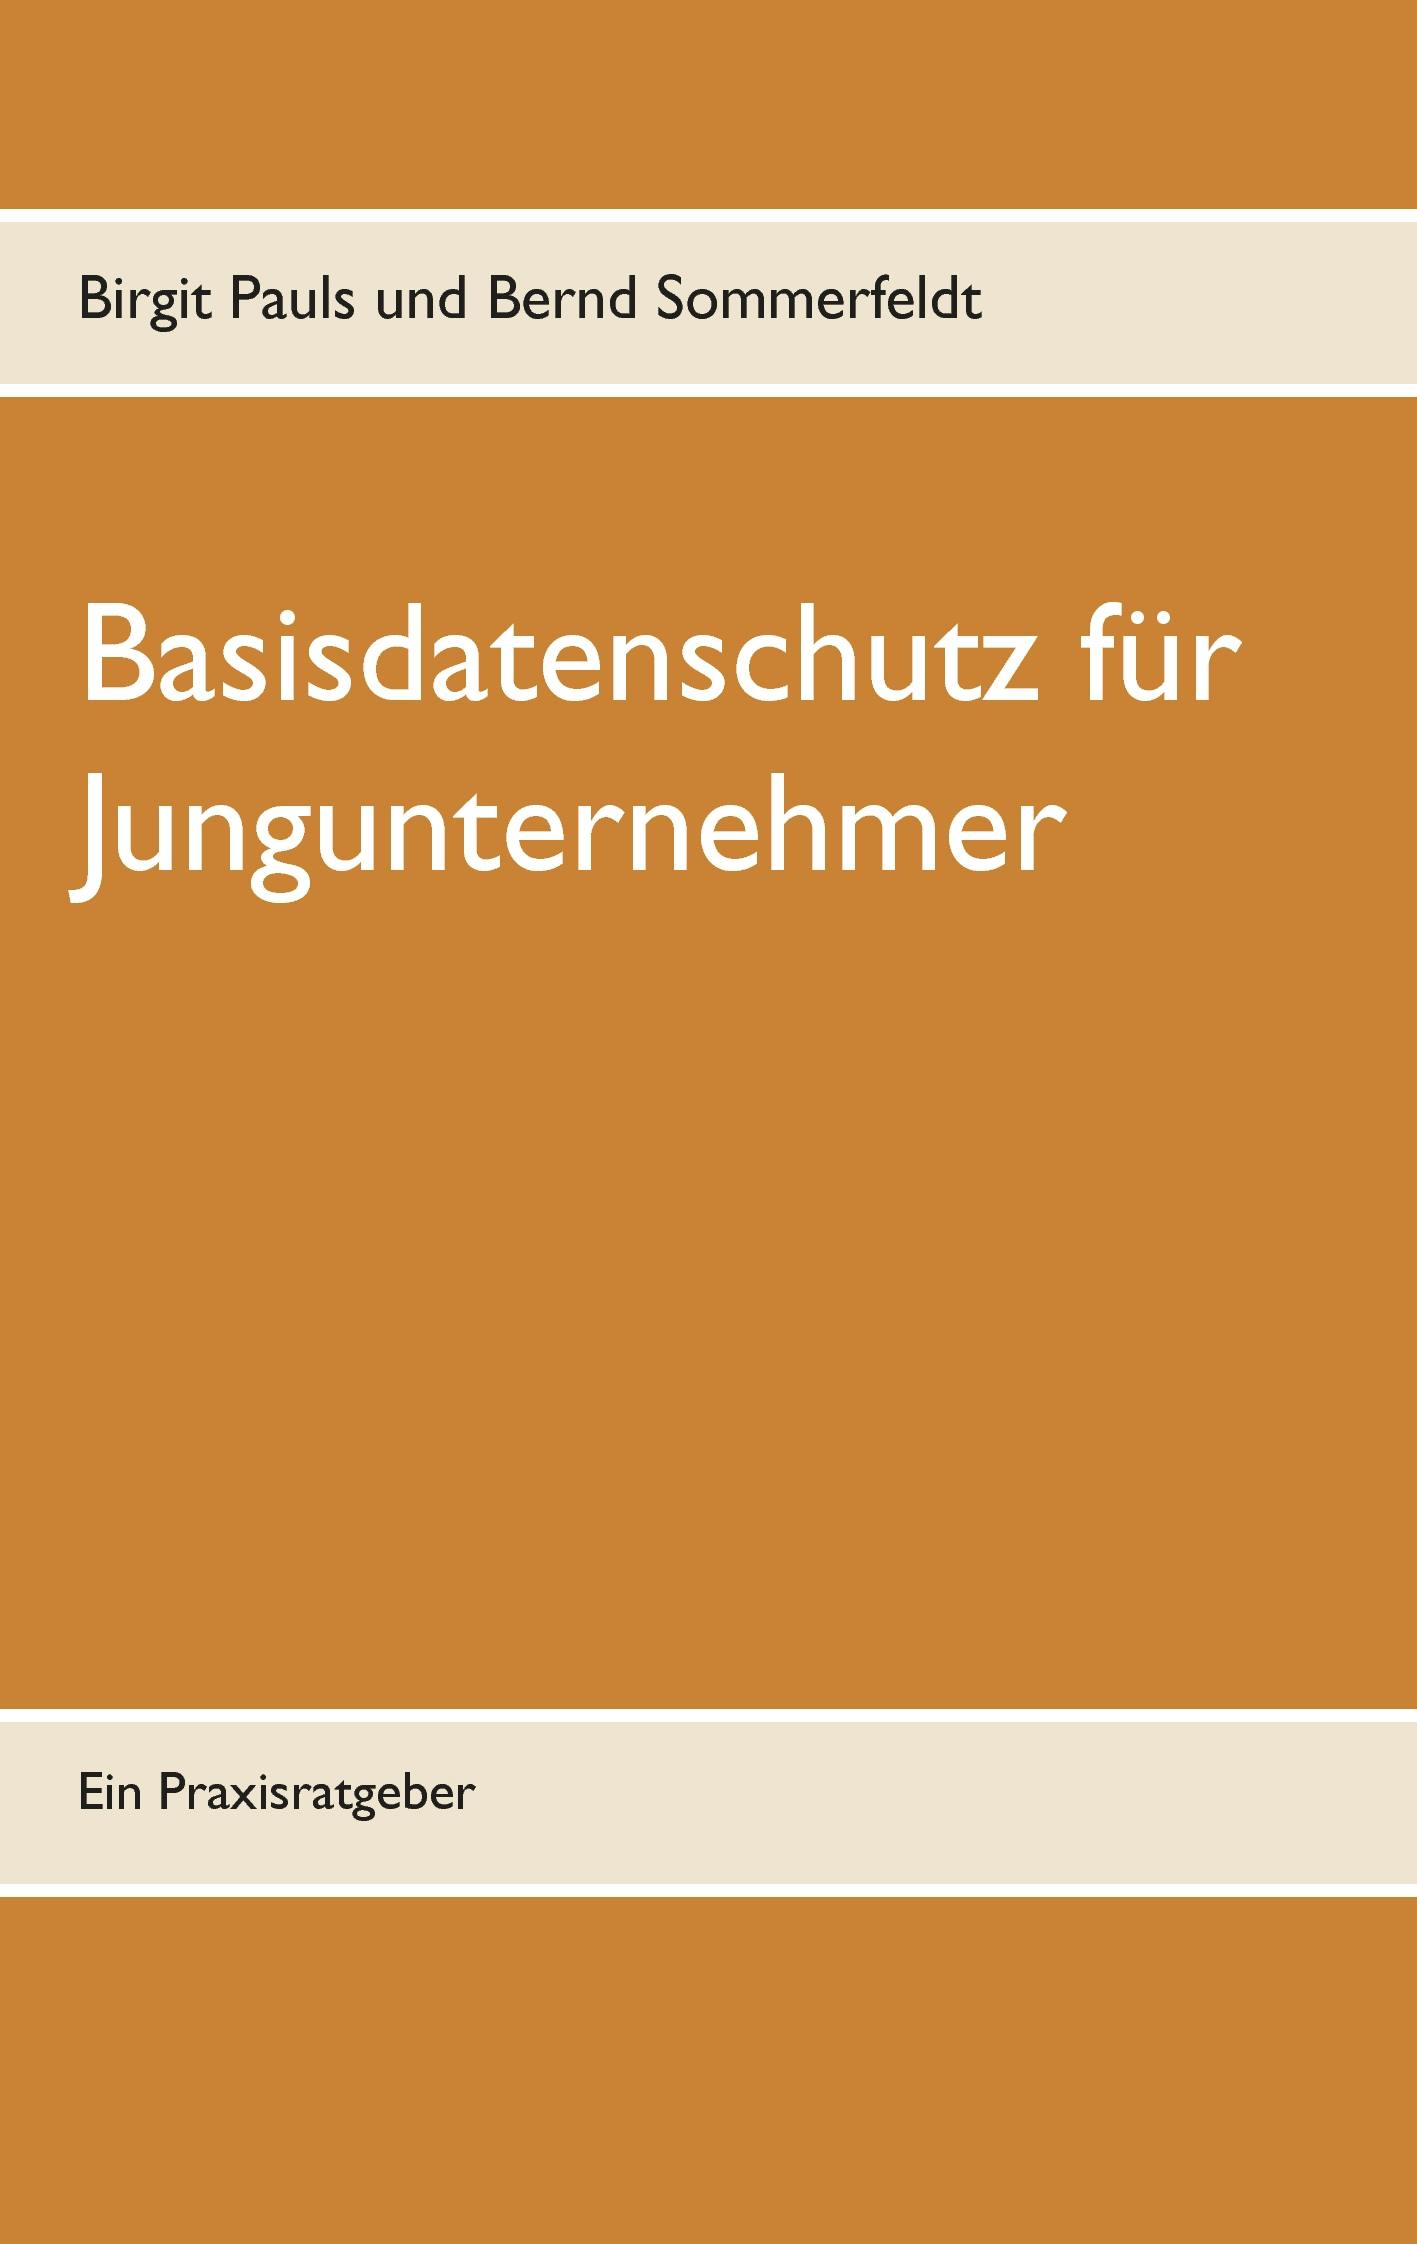 Basisdatenschutz für Jungunternehmer - Bernd Sommerfeldt, Birgit Pauls